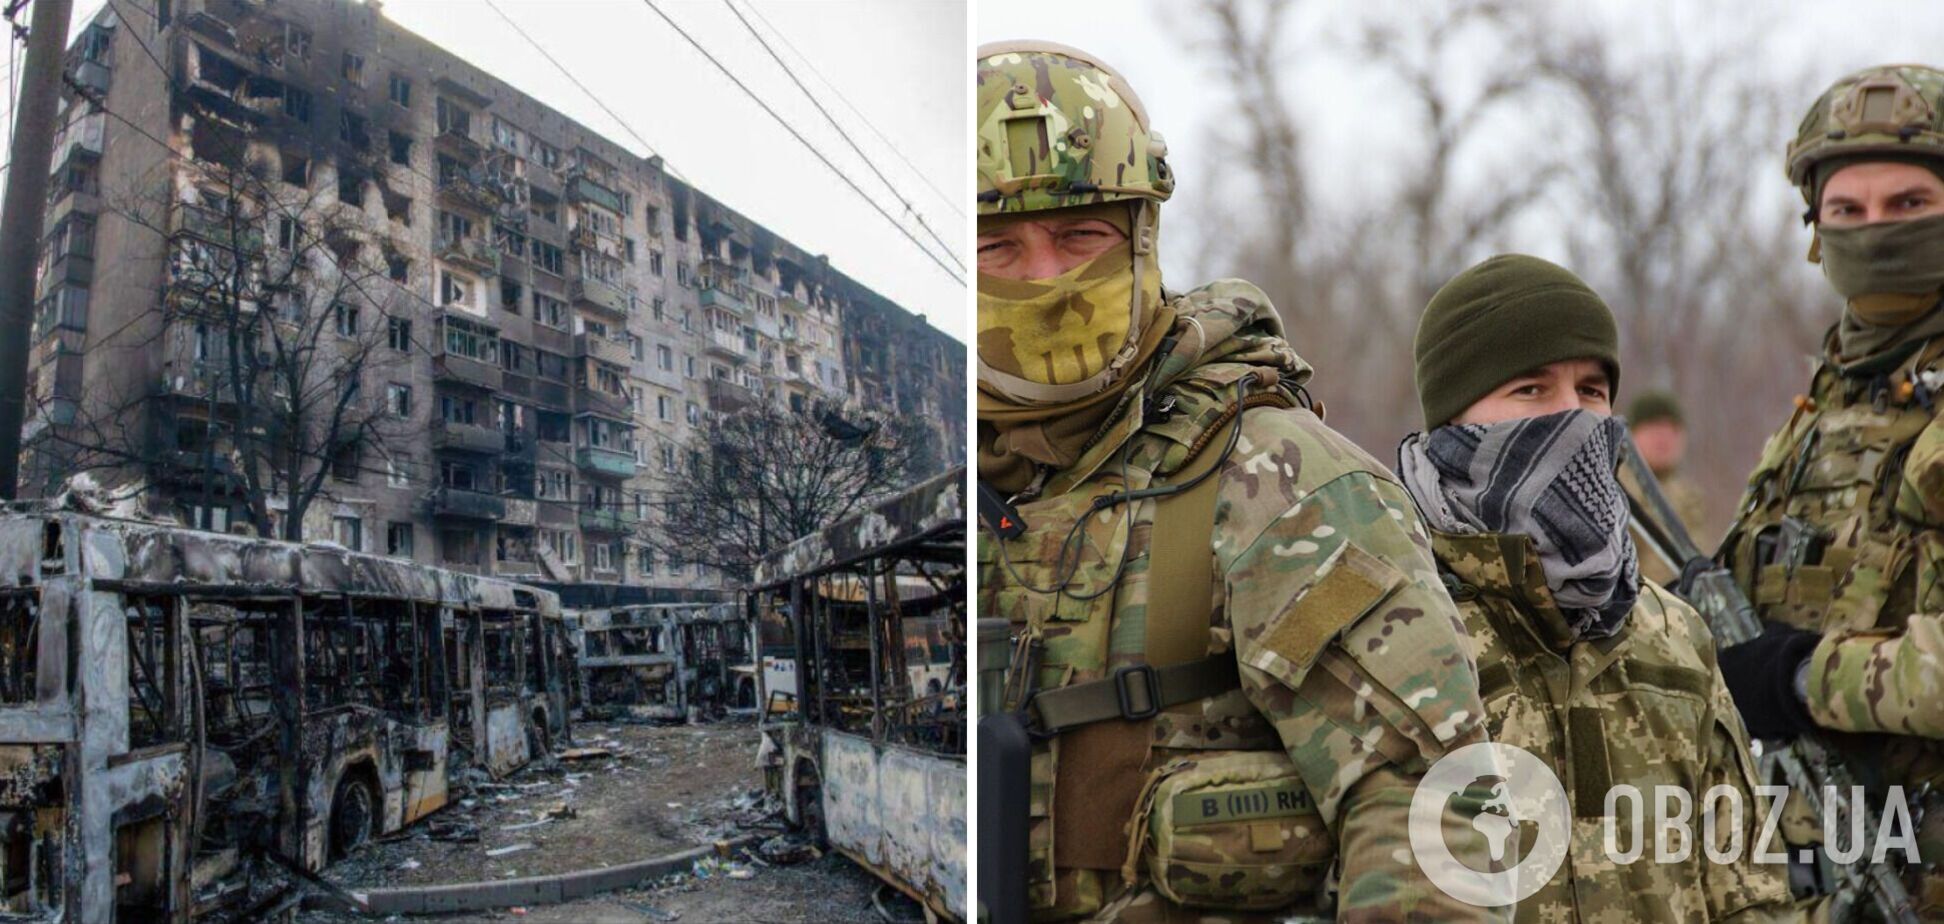 Оборонці Маріуполя: ми віримо у військово-політичне керівництво України і продовжуємо боротьбу. Відео